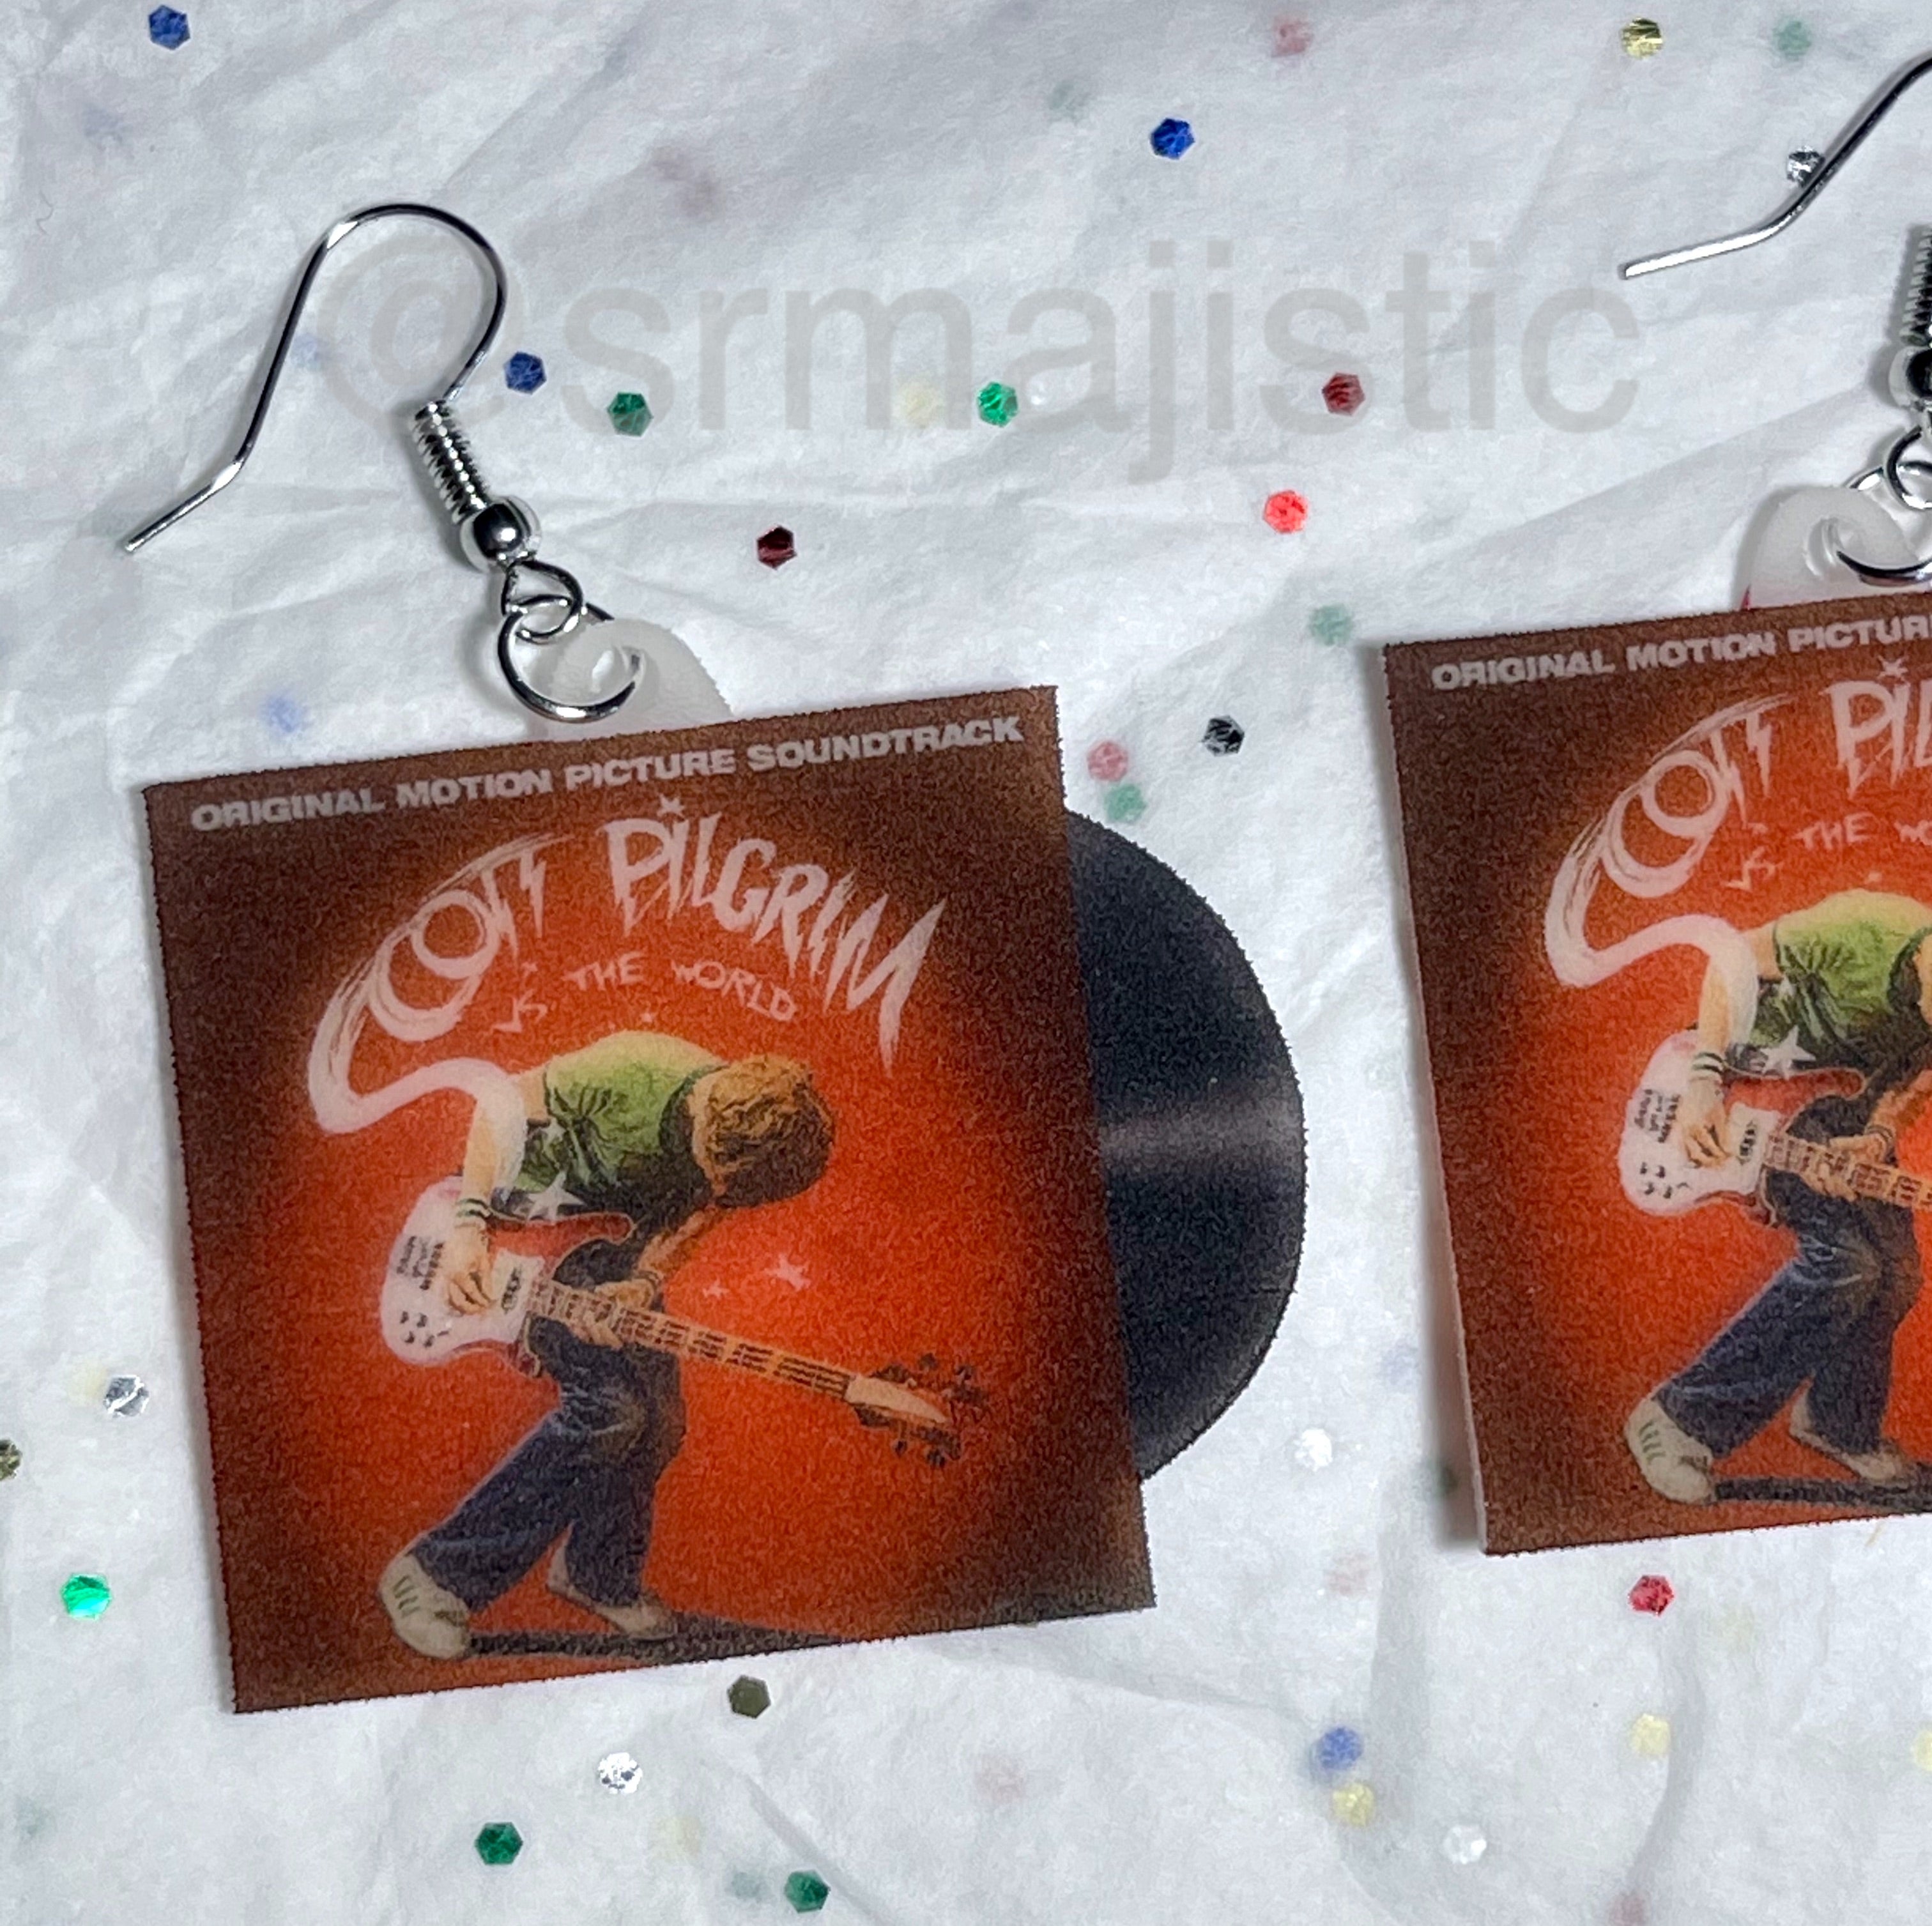 Scott Pilgrim Vs the World Movie Soundtrack Vinyl Album Handmade Earrings!